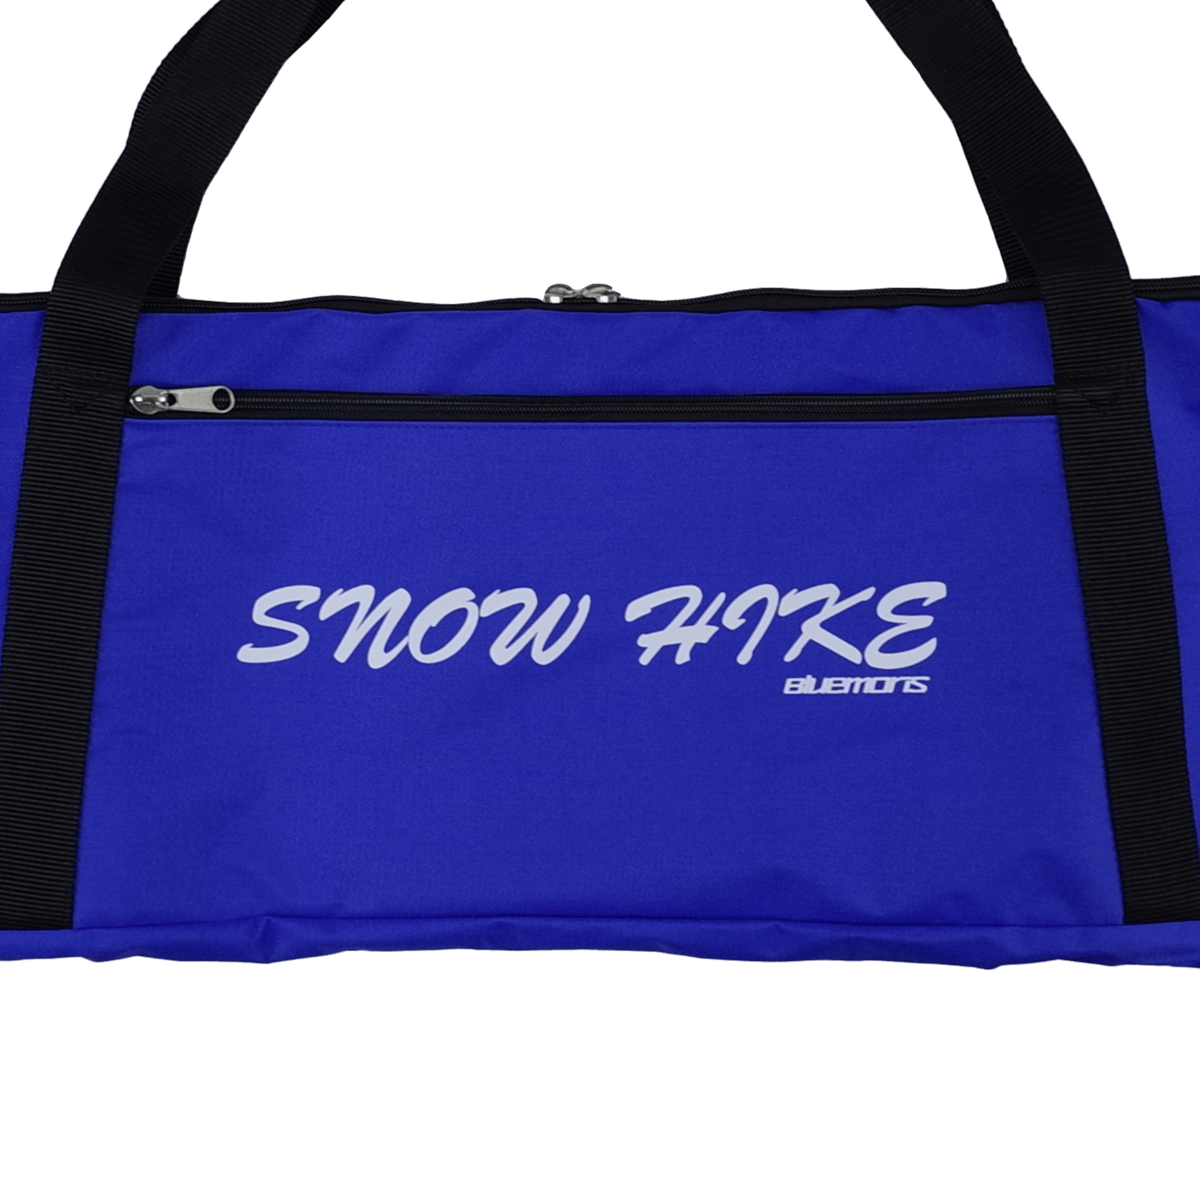 スノーハイク専用ケース | Bluemoris official web shop